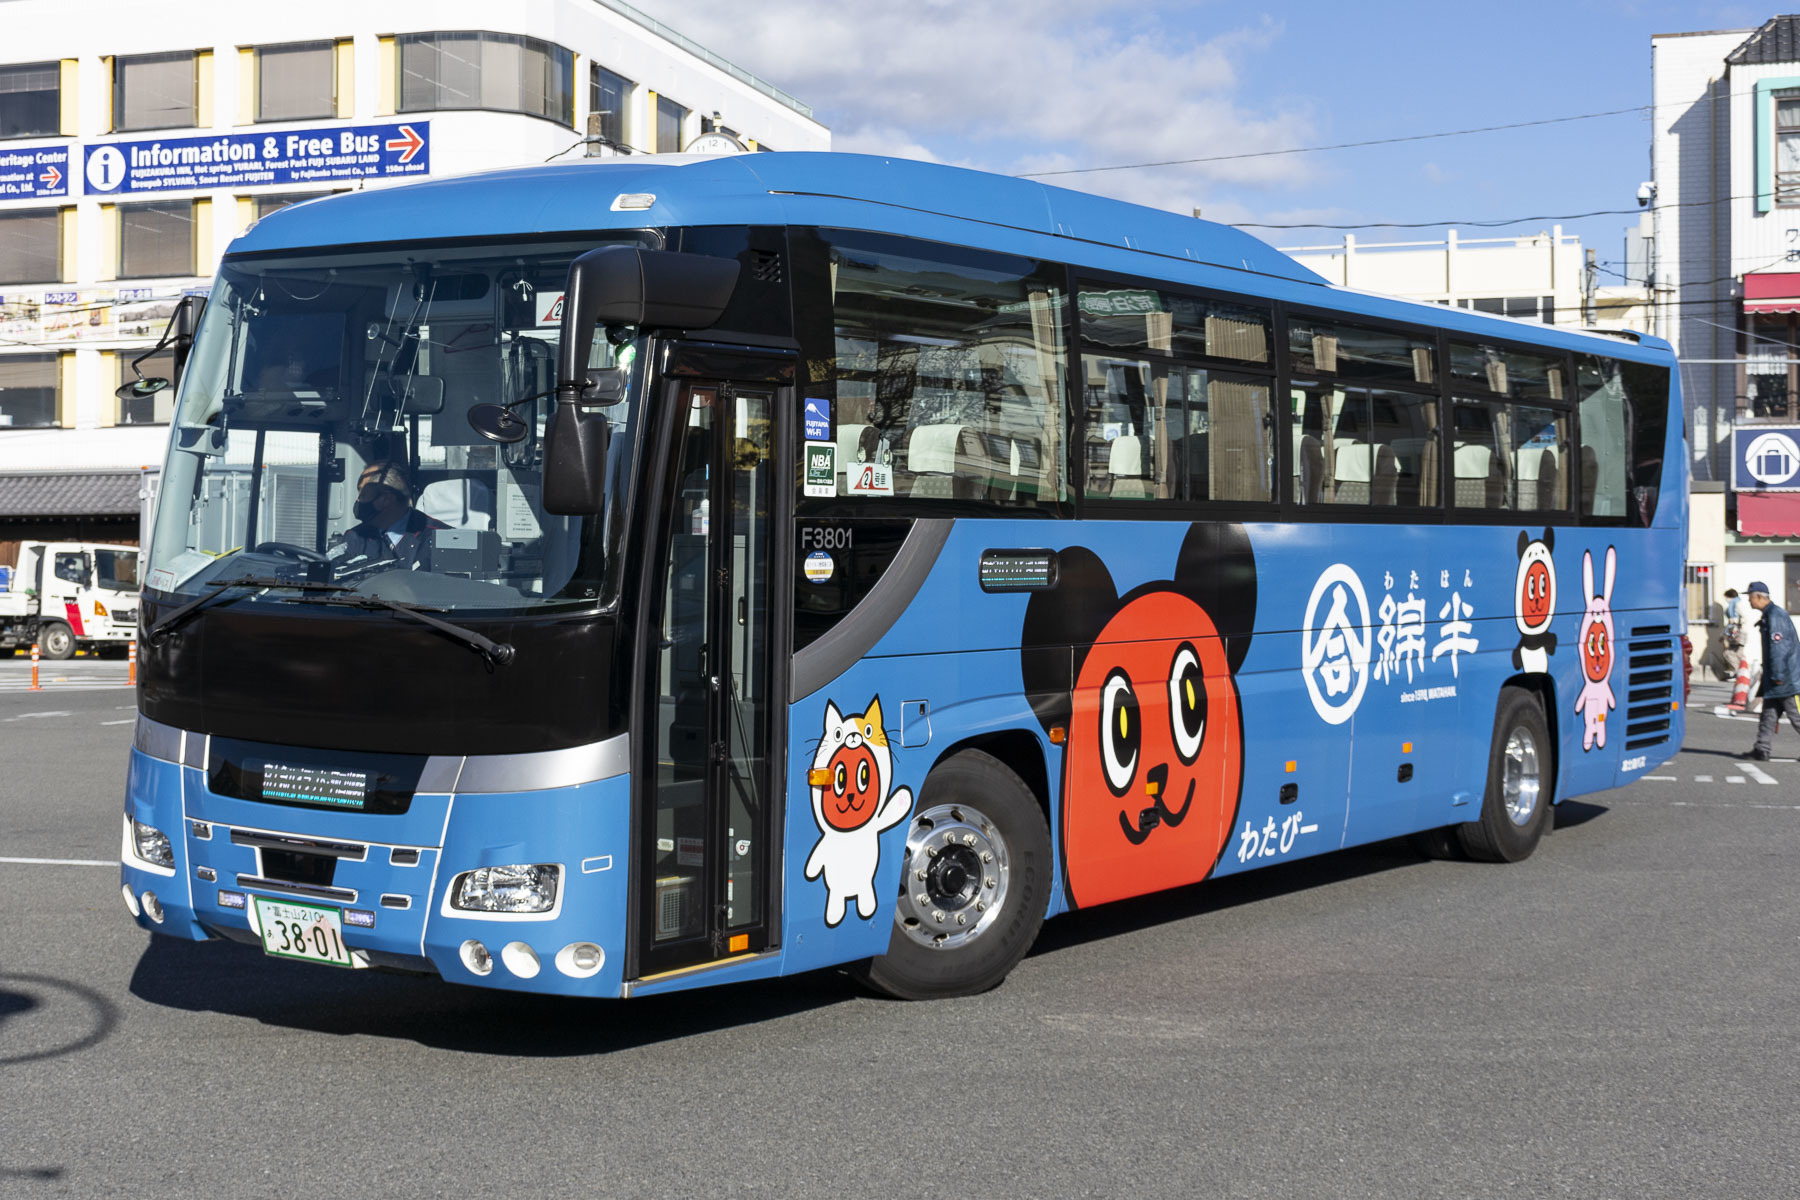 富士急バス / Re:ゼロから始める富士急ハイランド生活ラッピングバス_d0226909_12432092.jpg